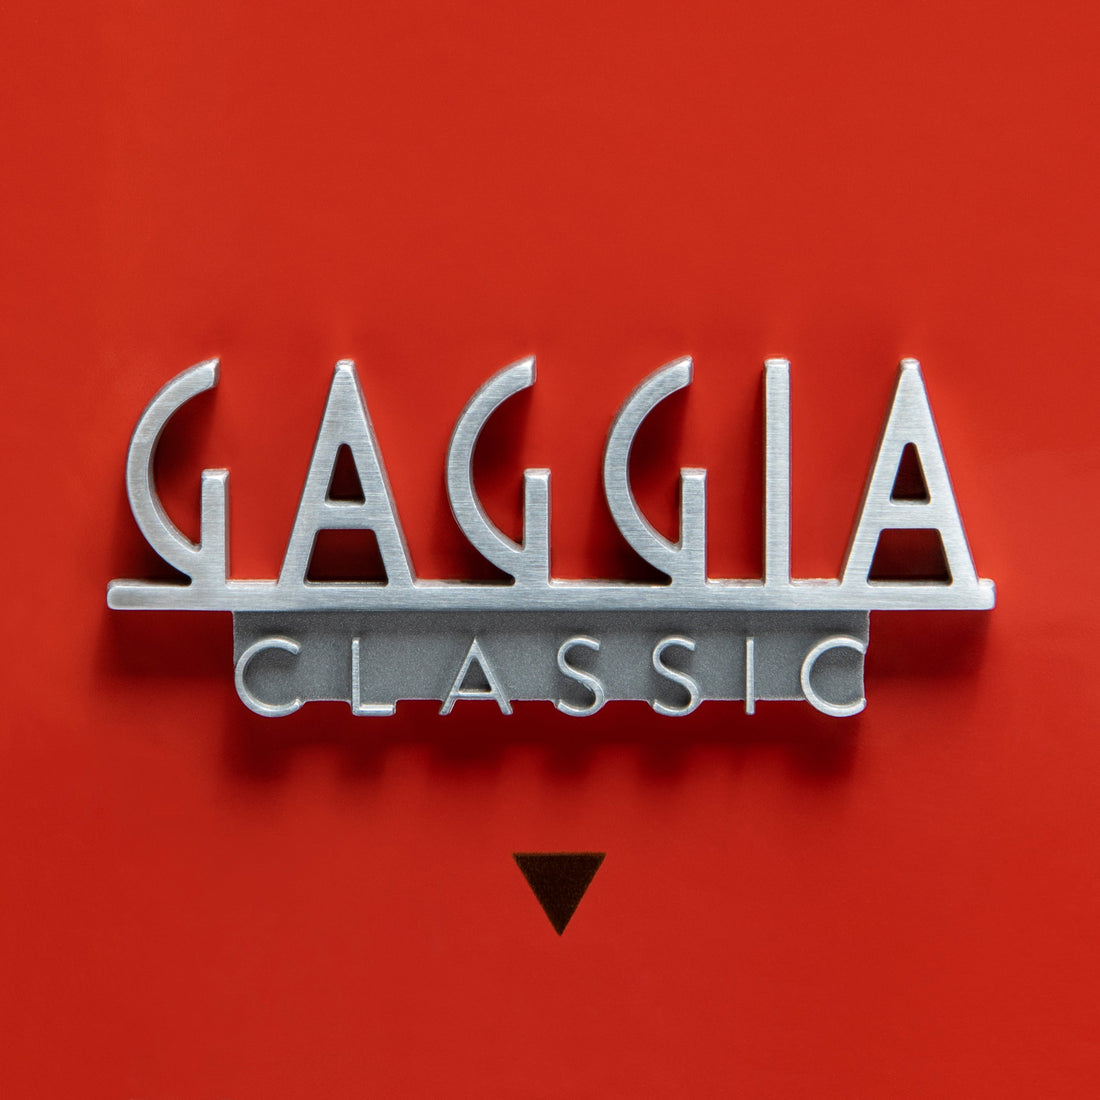 Gaggia Classic Evo Pro Espresso Machine in Lobster Red with Walnut